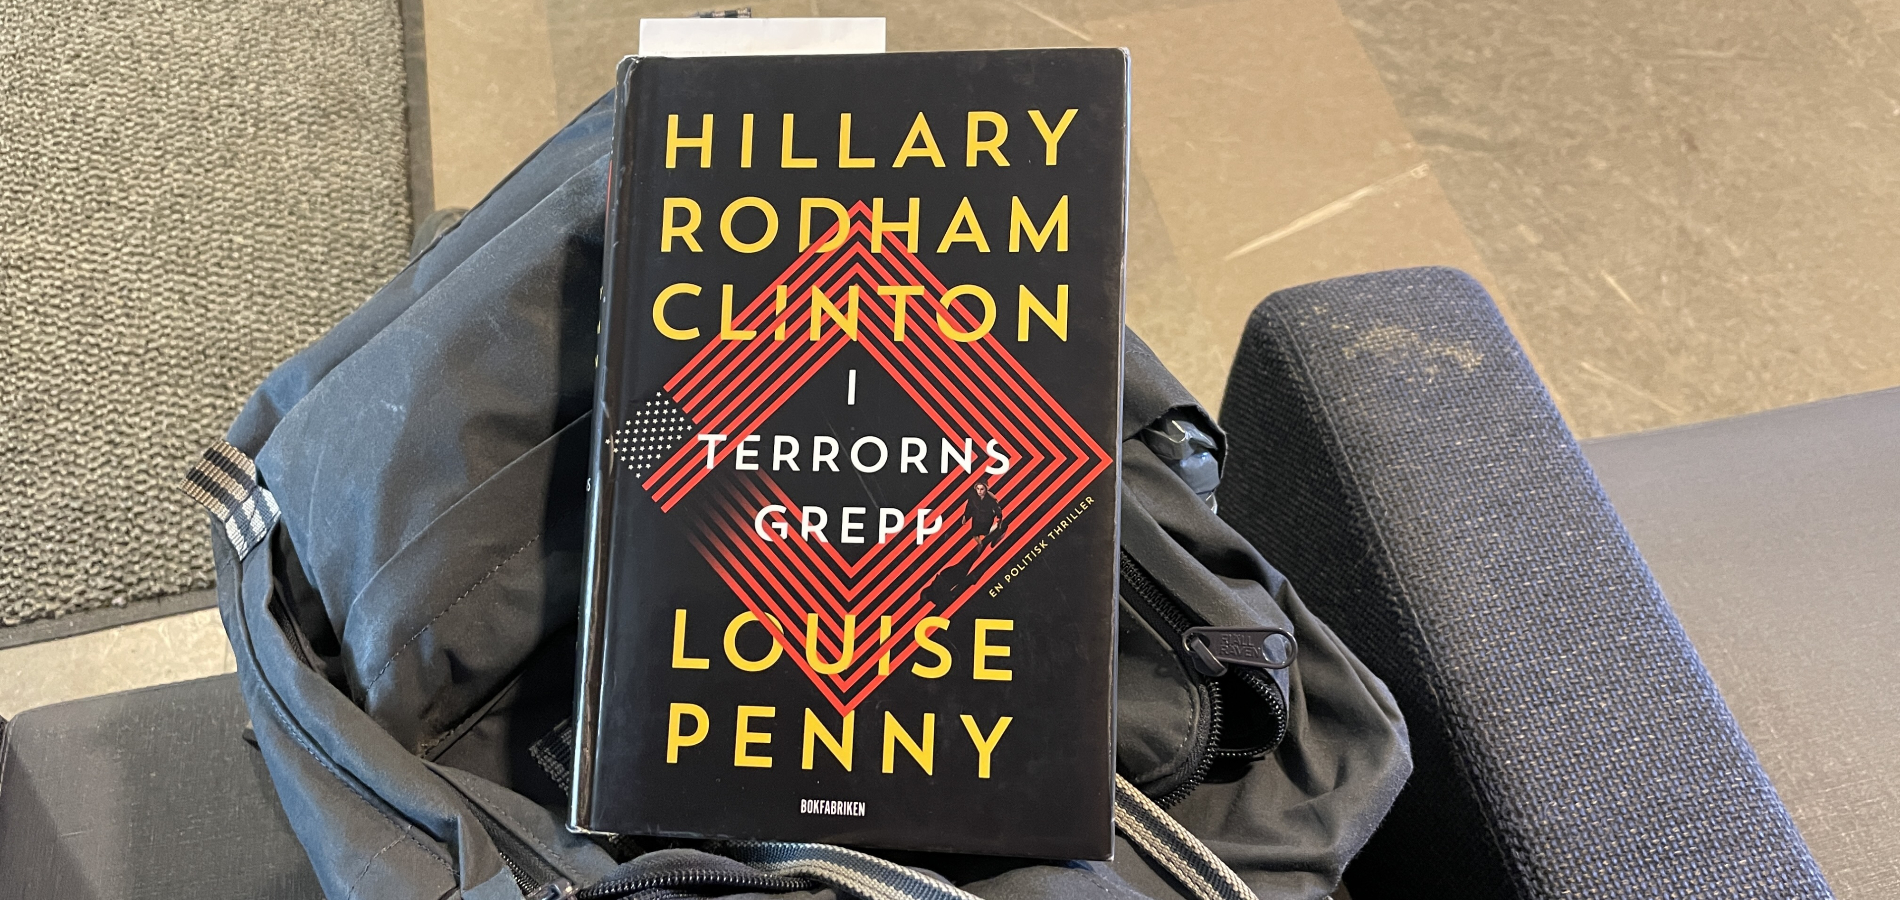 Recension: I terrorns grepp av Hillary Rodham Clinton och Louise Penny -  Bläddrat